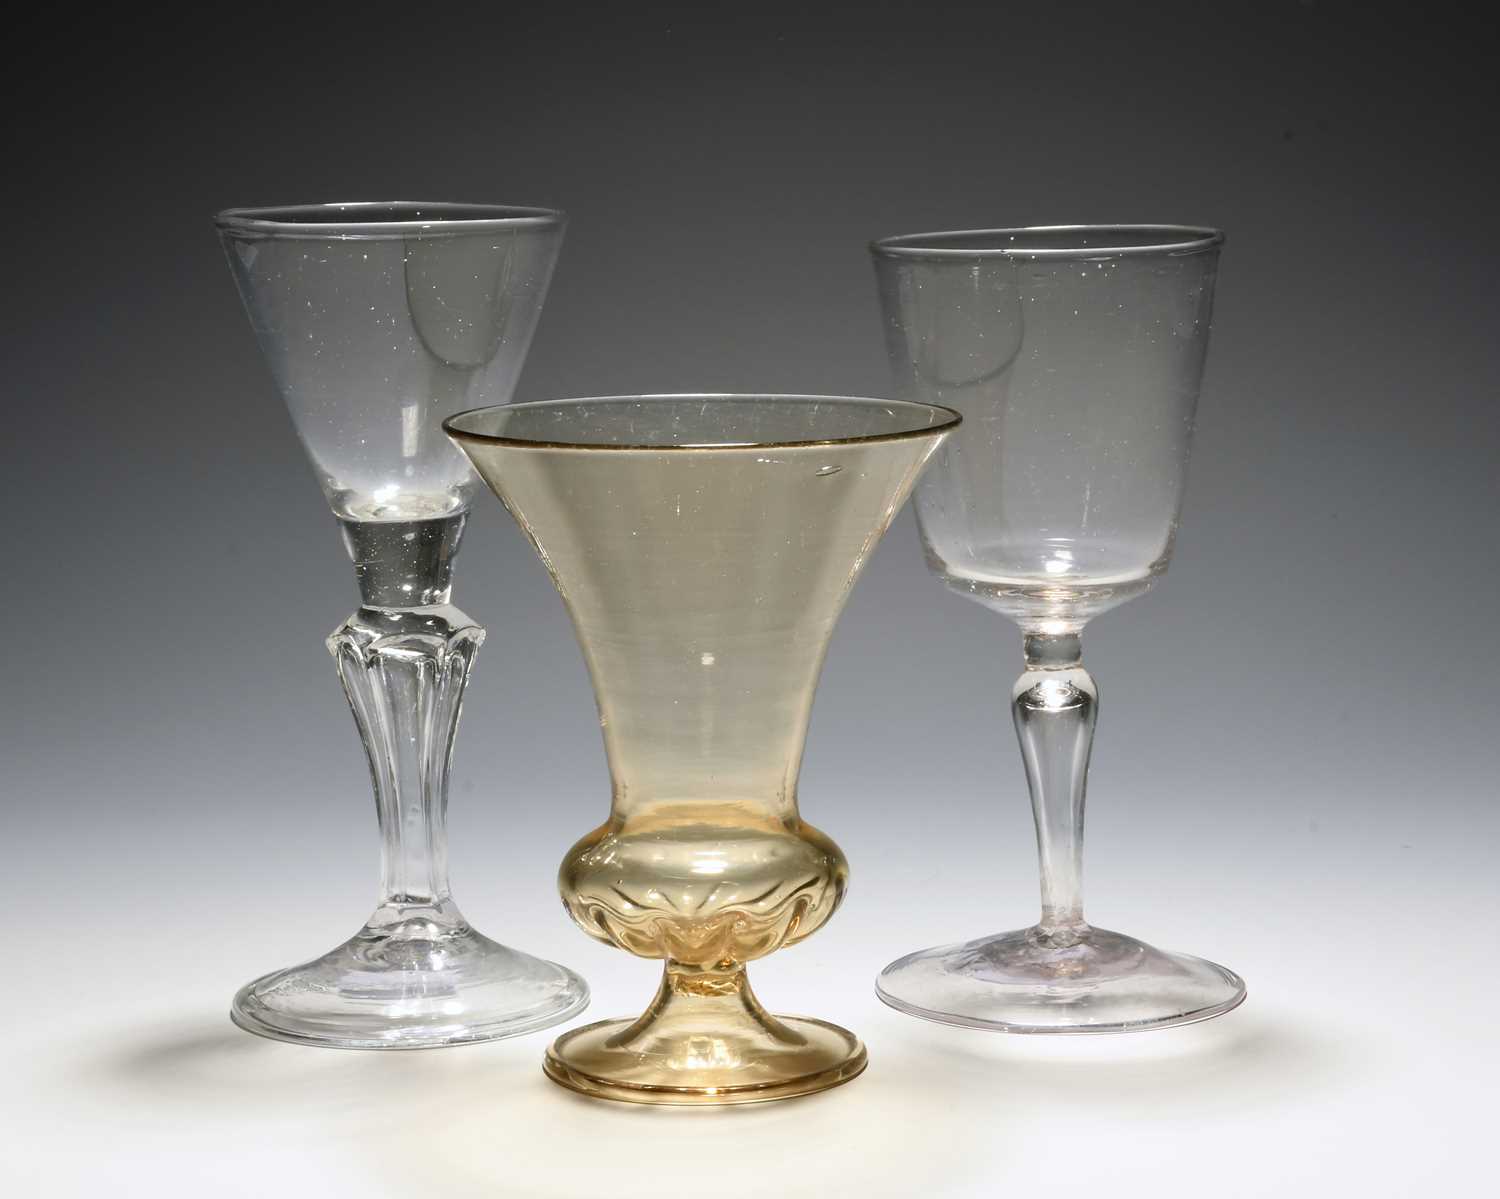 A façon de Venise wine glass, early 18th century, the generous bowl raised on a hollow stem, a façon